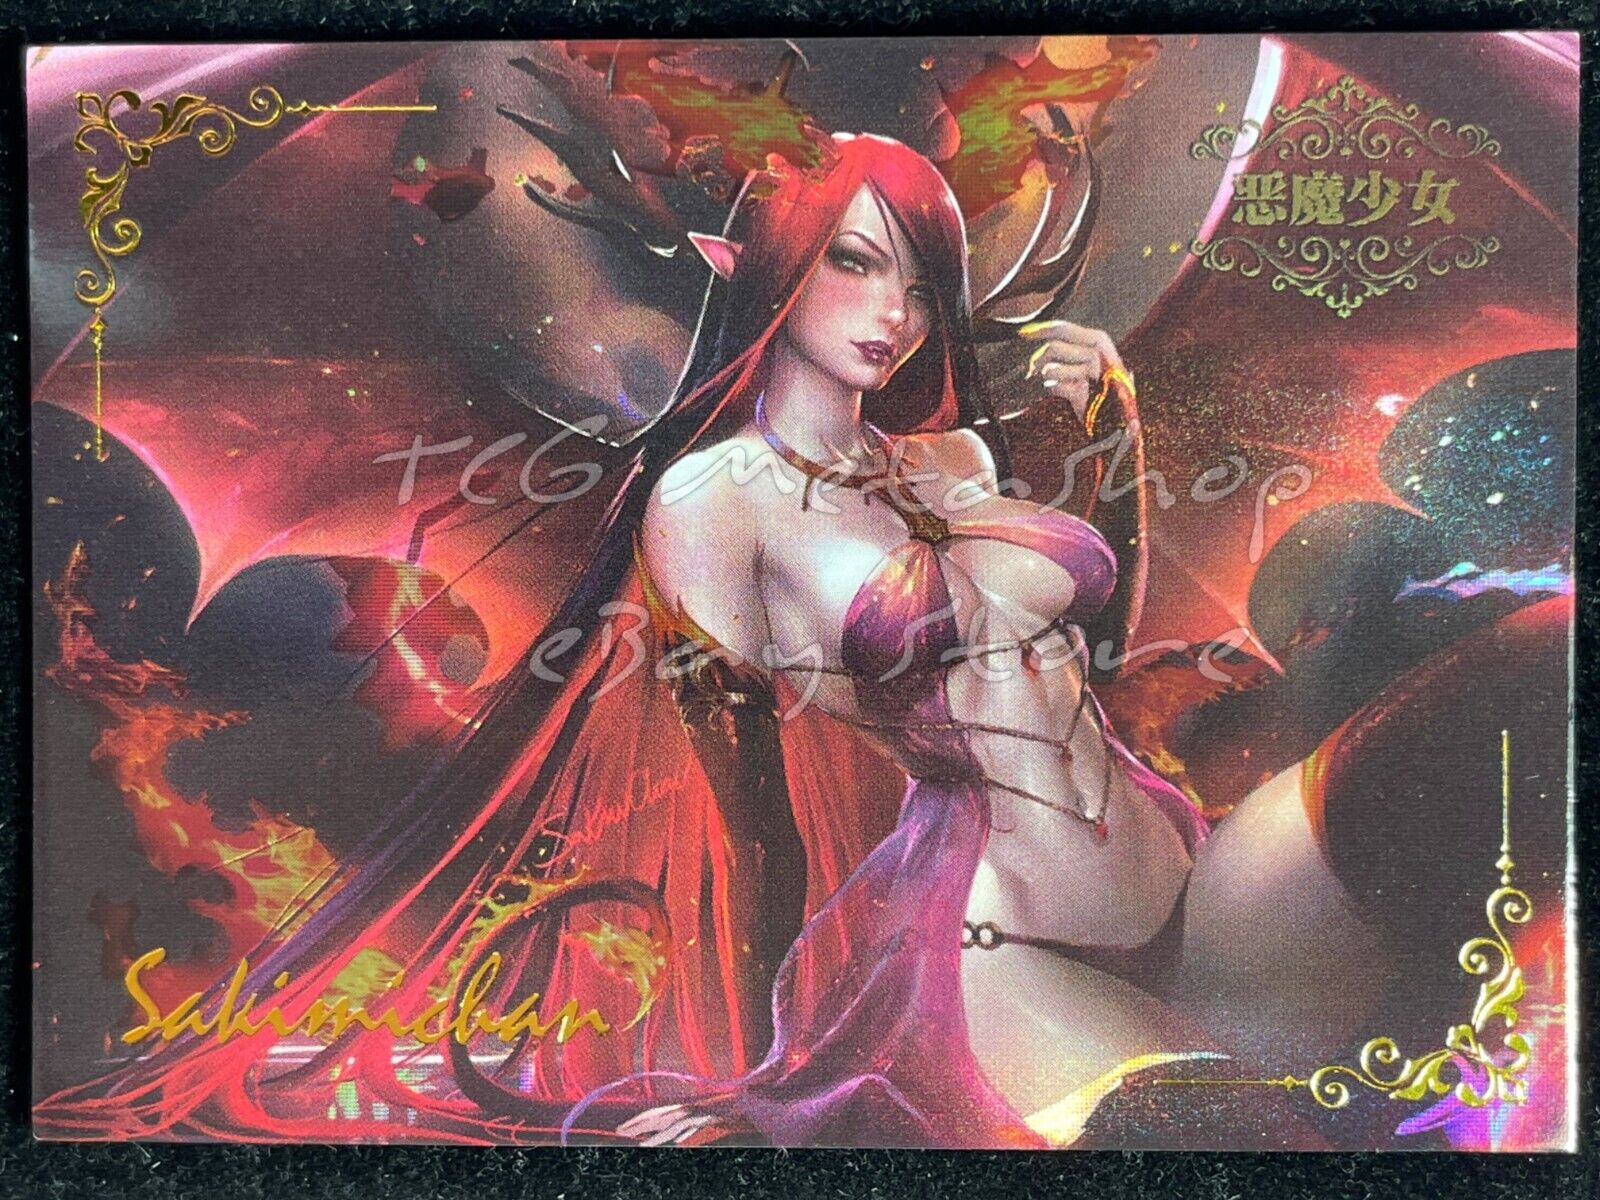 🔥 ACG-SAC [Pick your card Sun 1 - 38] Goddess Story Anime Waifu Doujin 🔥